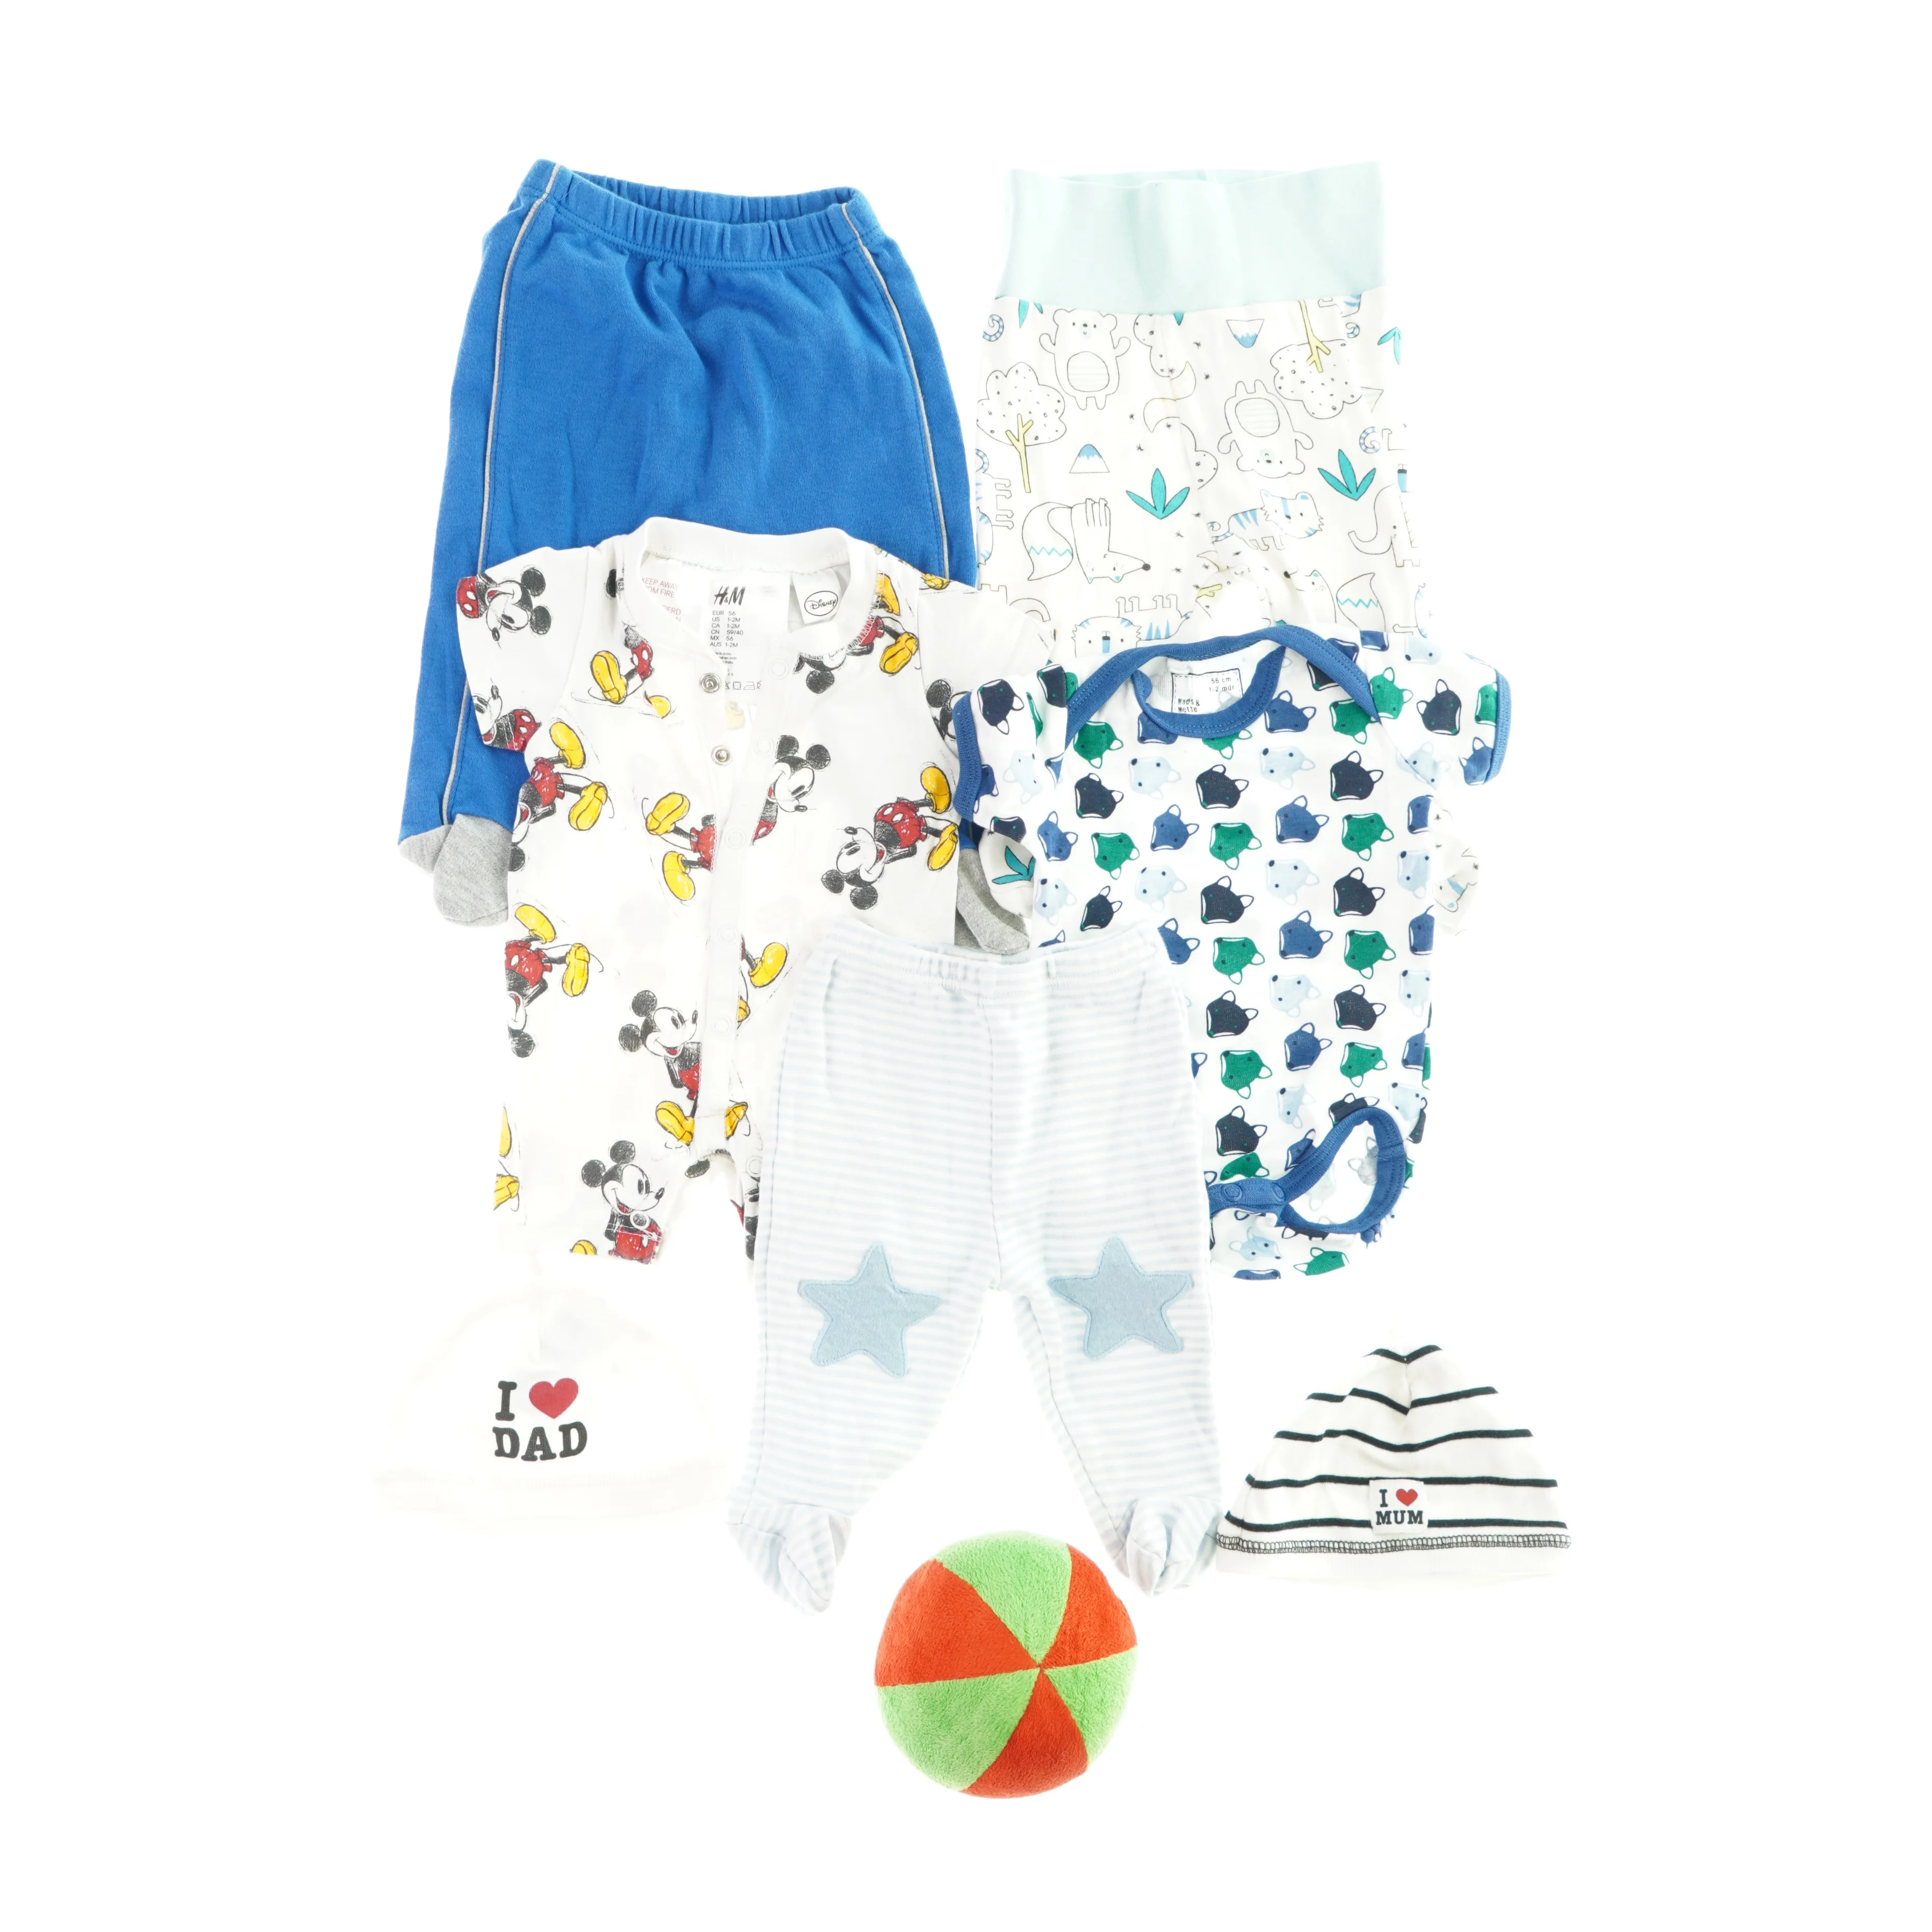 Waterfront Kristendom Plakater Babytøj, 3 bukser, 2 bodystockings, 2 huer og en bold | Orderly.shop